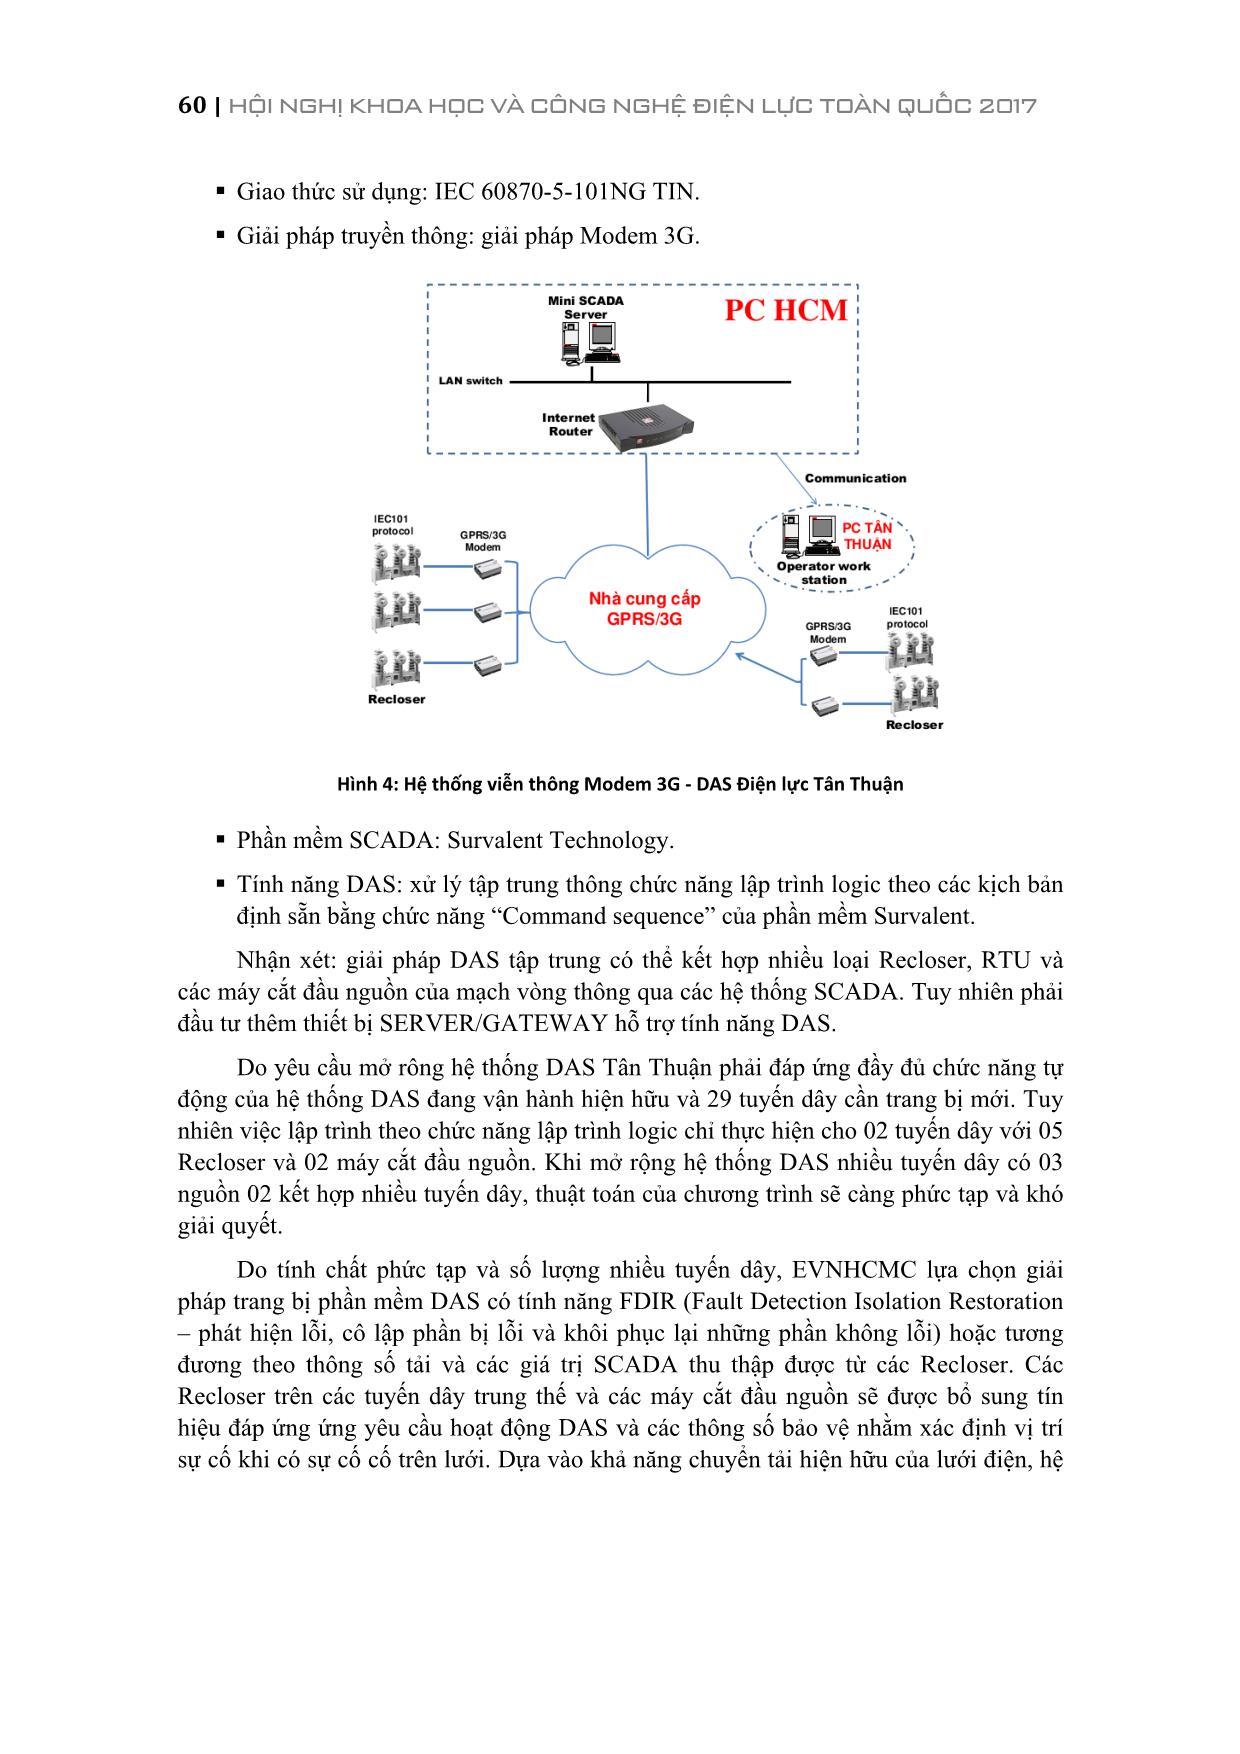 Ứng dụng tự động hóa lưới phân phối trong công tác nâng cao độ tin cậy cung cấp điện tại tổng công ty điện lực thành phố Hồ Chí Minh trang 6